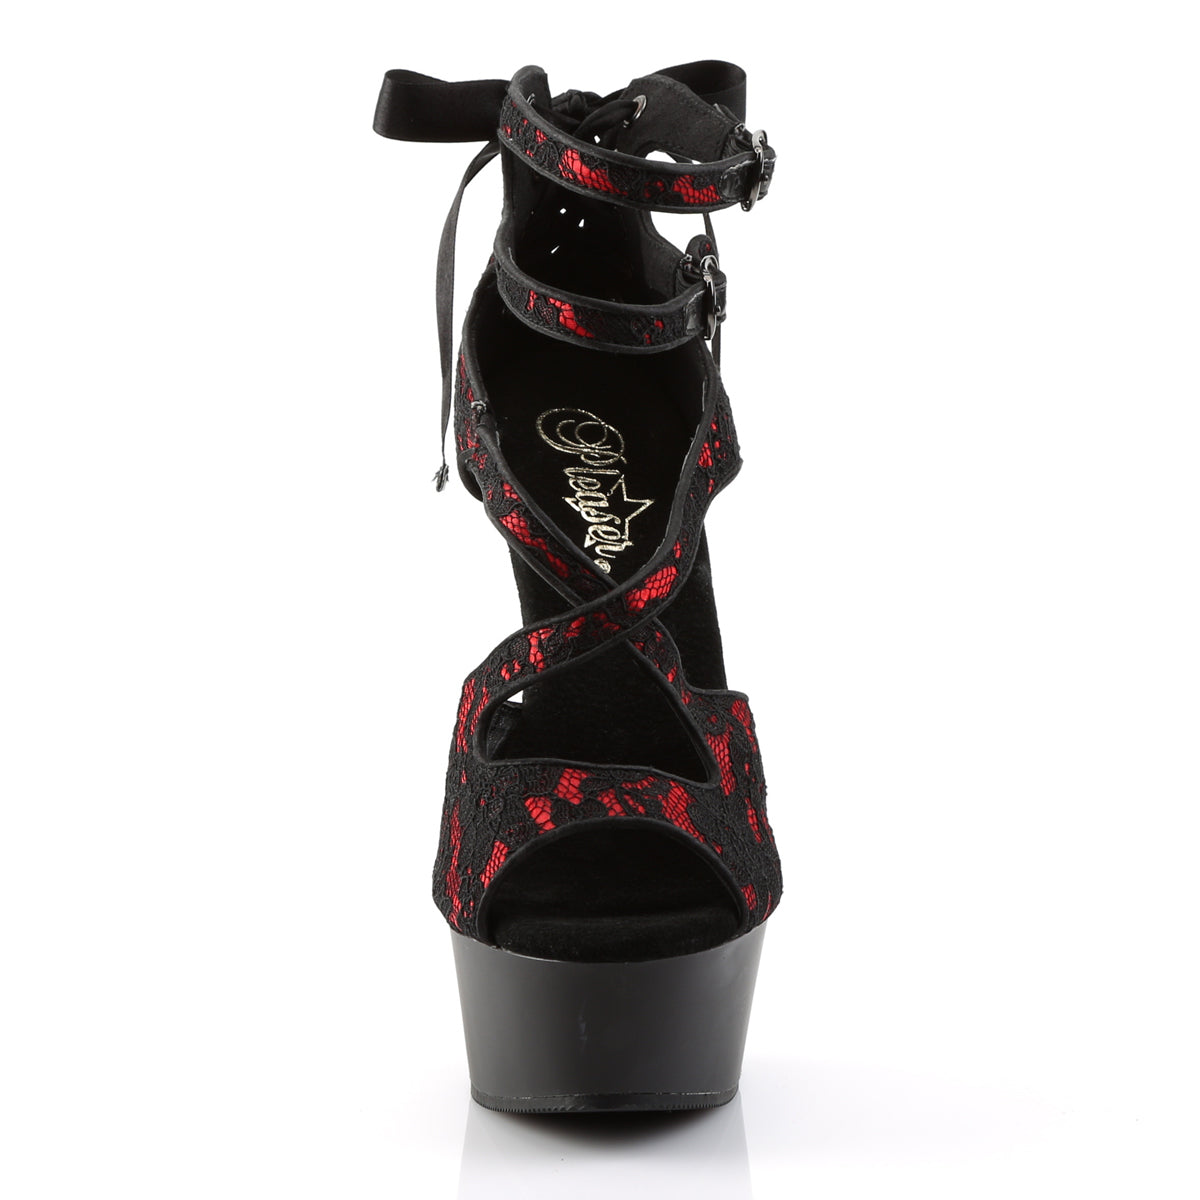 DELIGHT-678LC Pleaser Red Satin-Lace/Black Matte Platform Shoes [Exotic Dance Shoes]